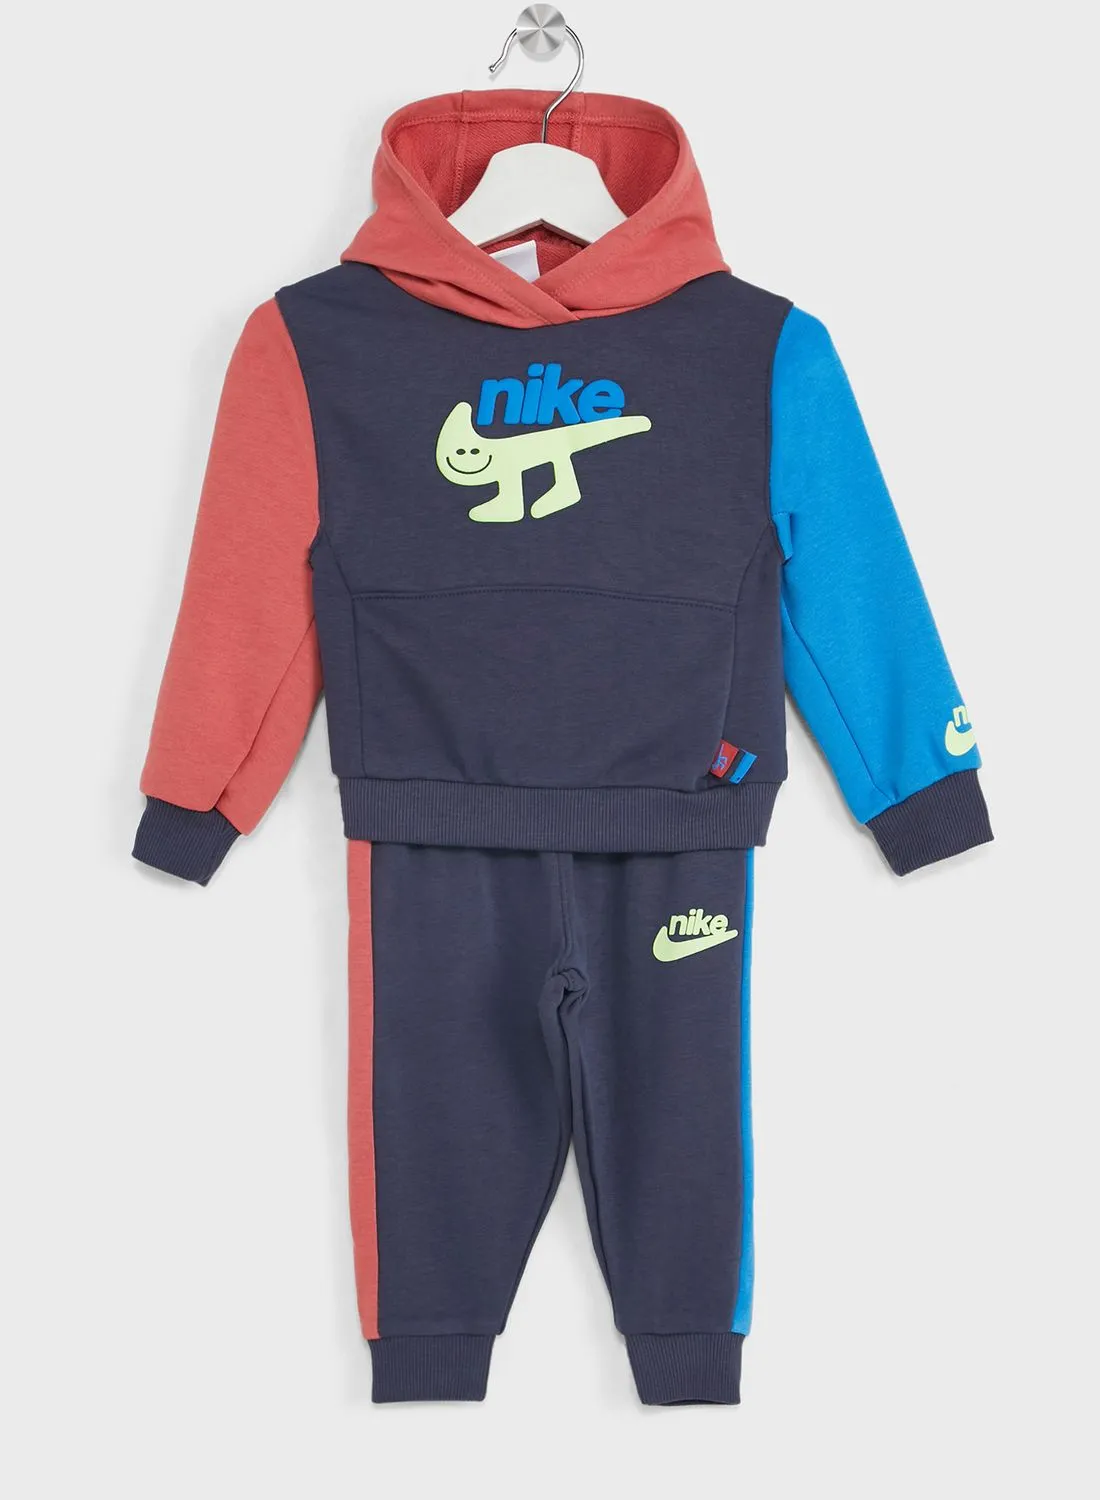 Nike Infant Colourblock Tracksuit